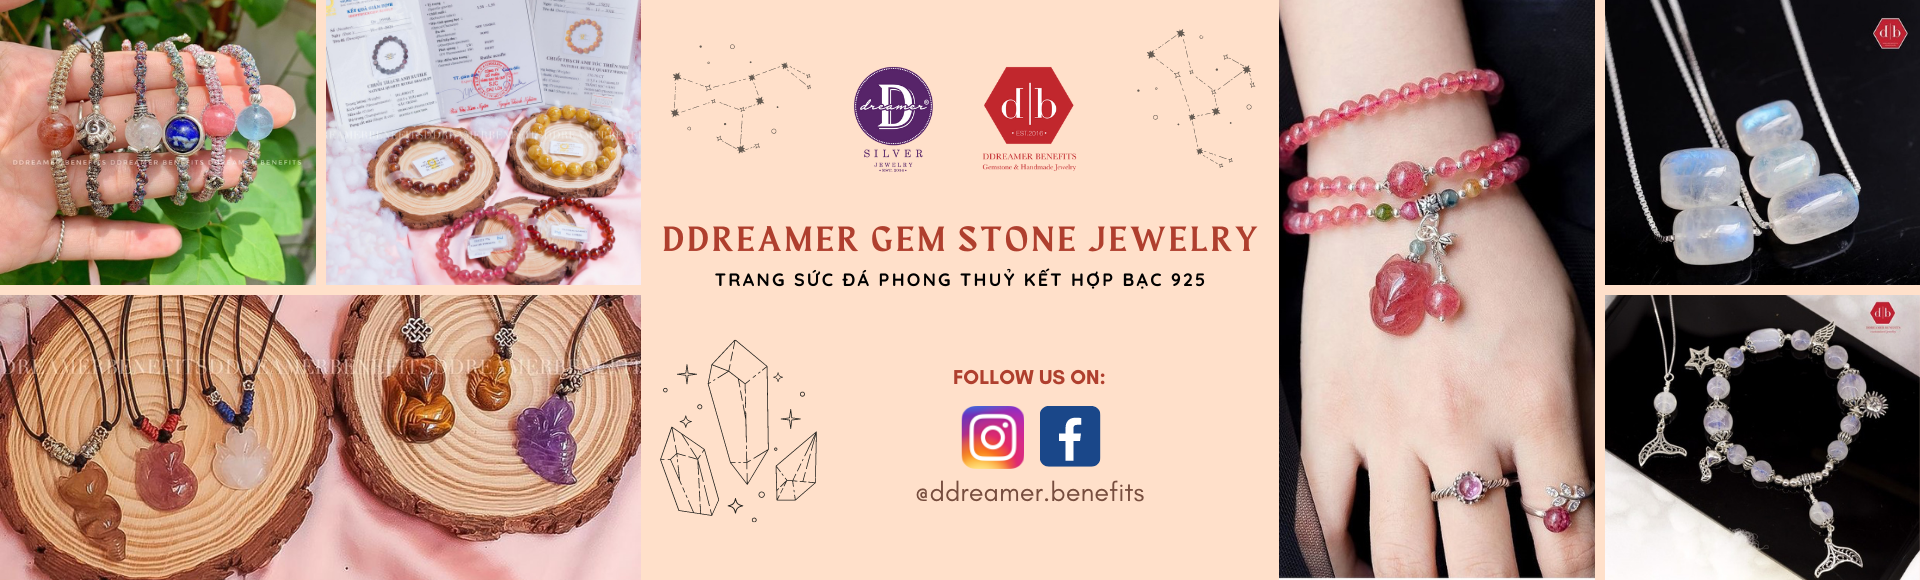 Tất Cả Trang Sức Đá Phong Thủy - Natural Gemstone Jewelry